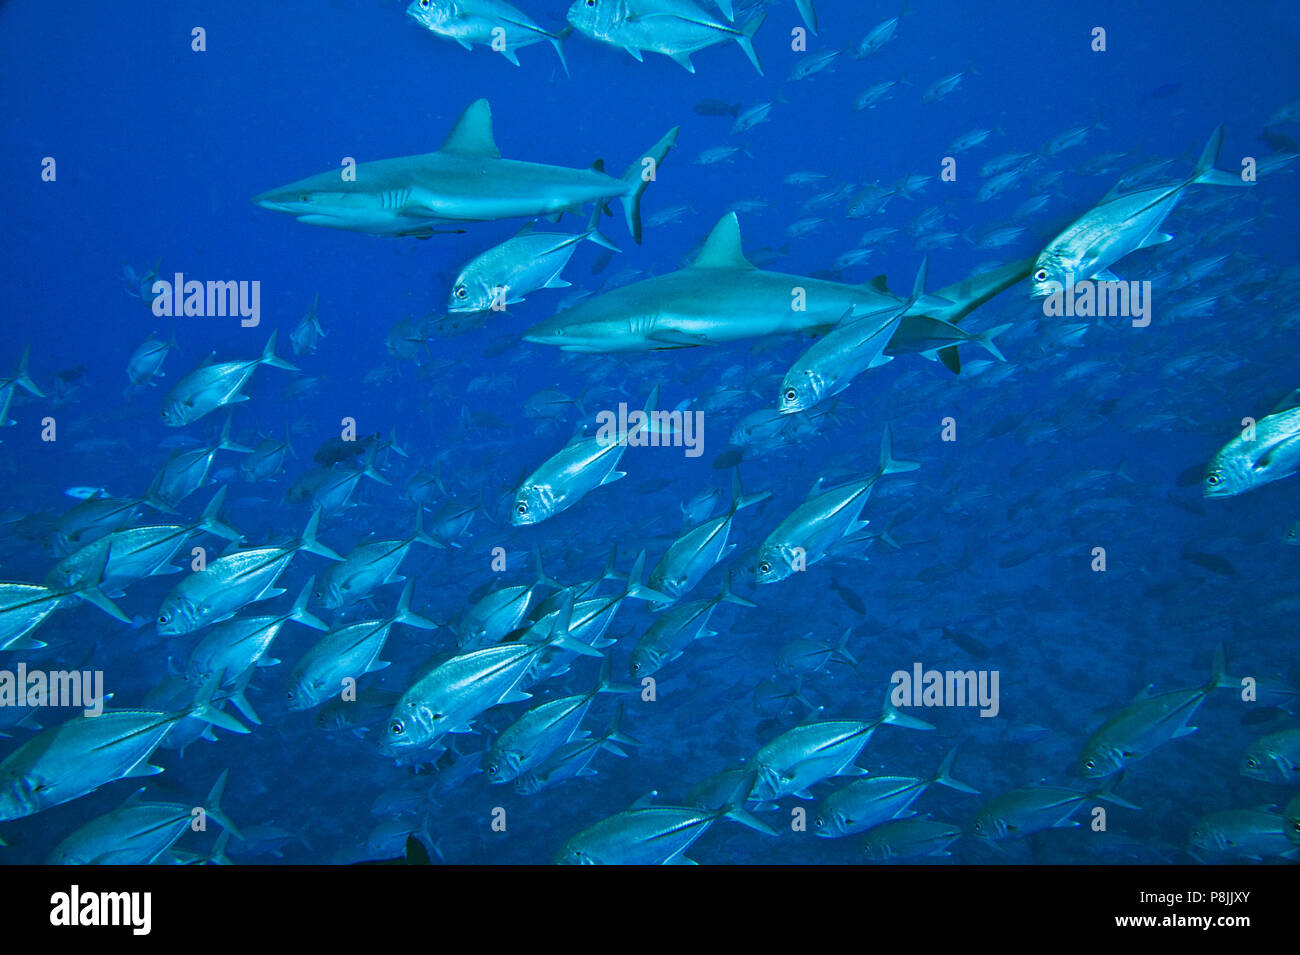 Jagd grau reefsharks in einem Schwarm von Fischen Stockfoto